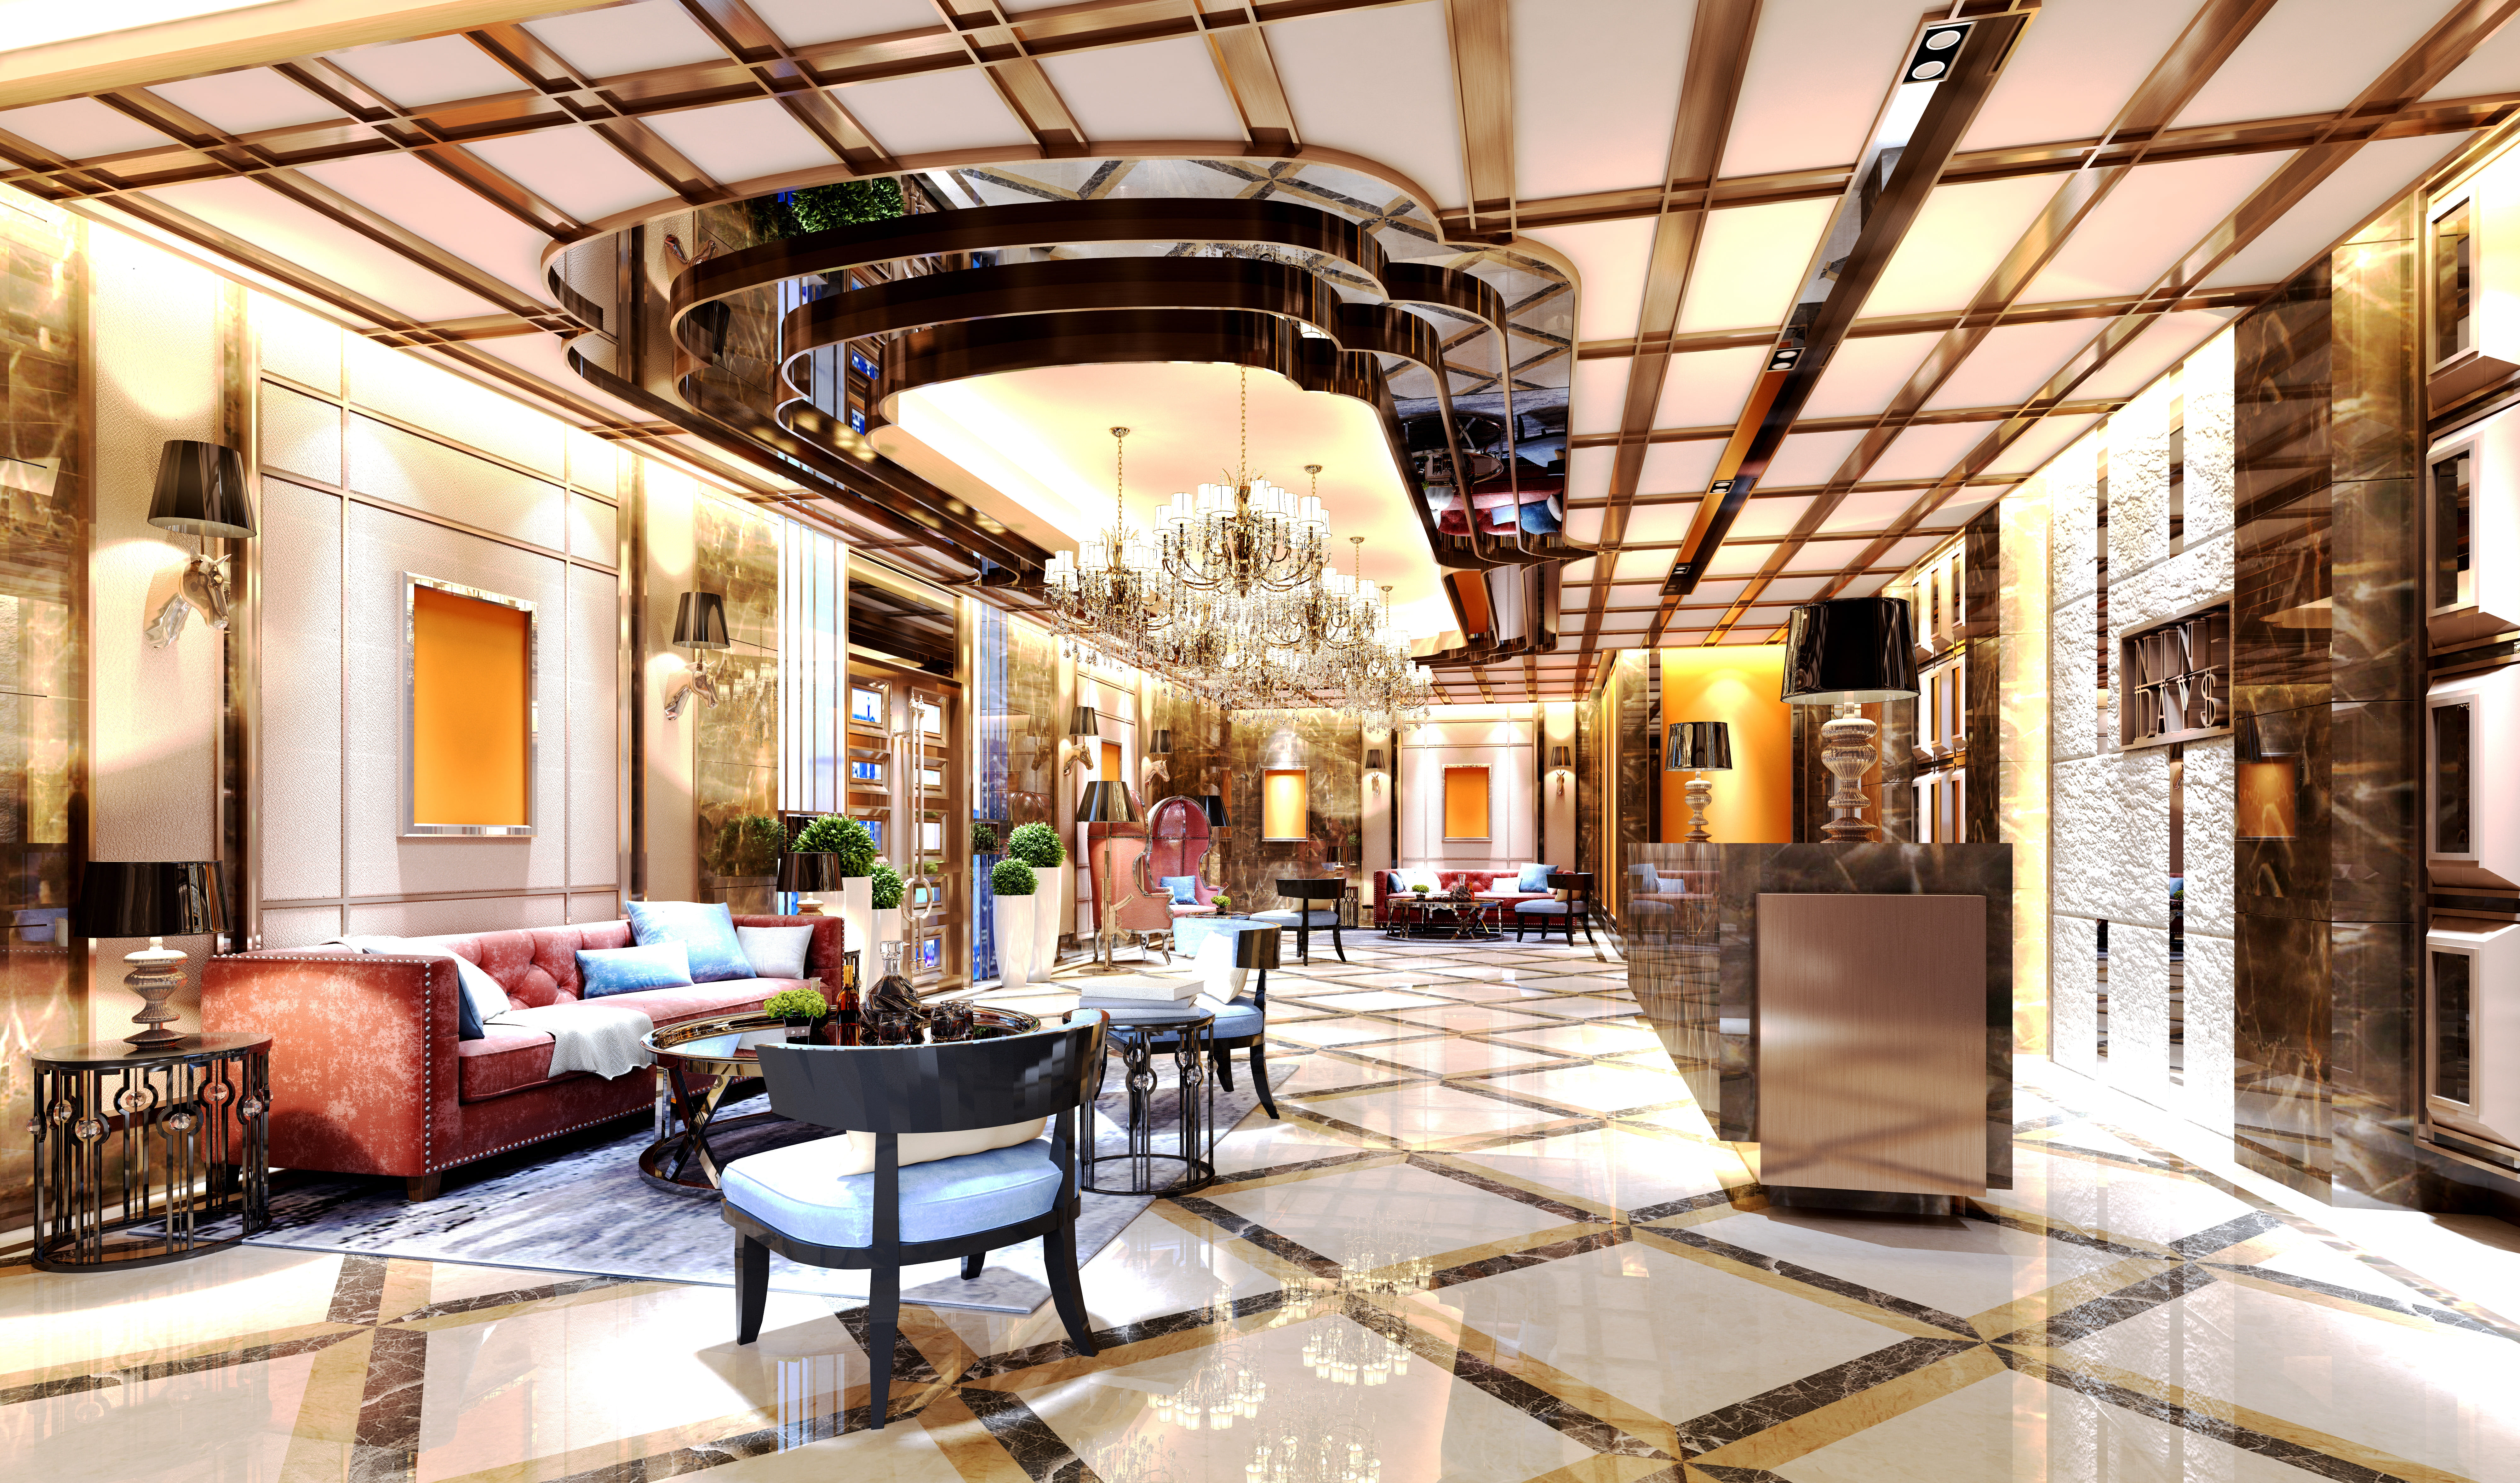 Hall d'entrée d'un hôtel luxueux | Source : Shutterstock